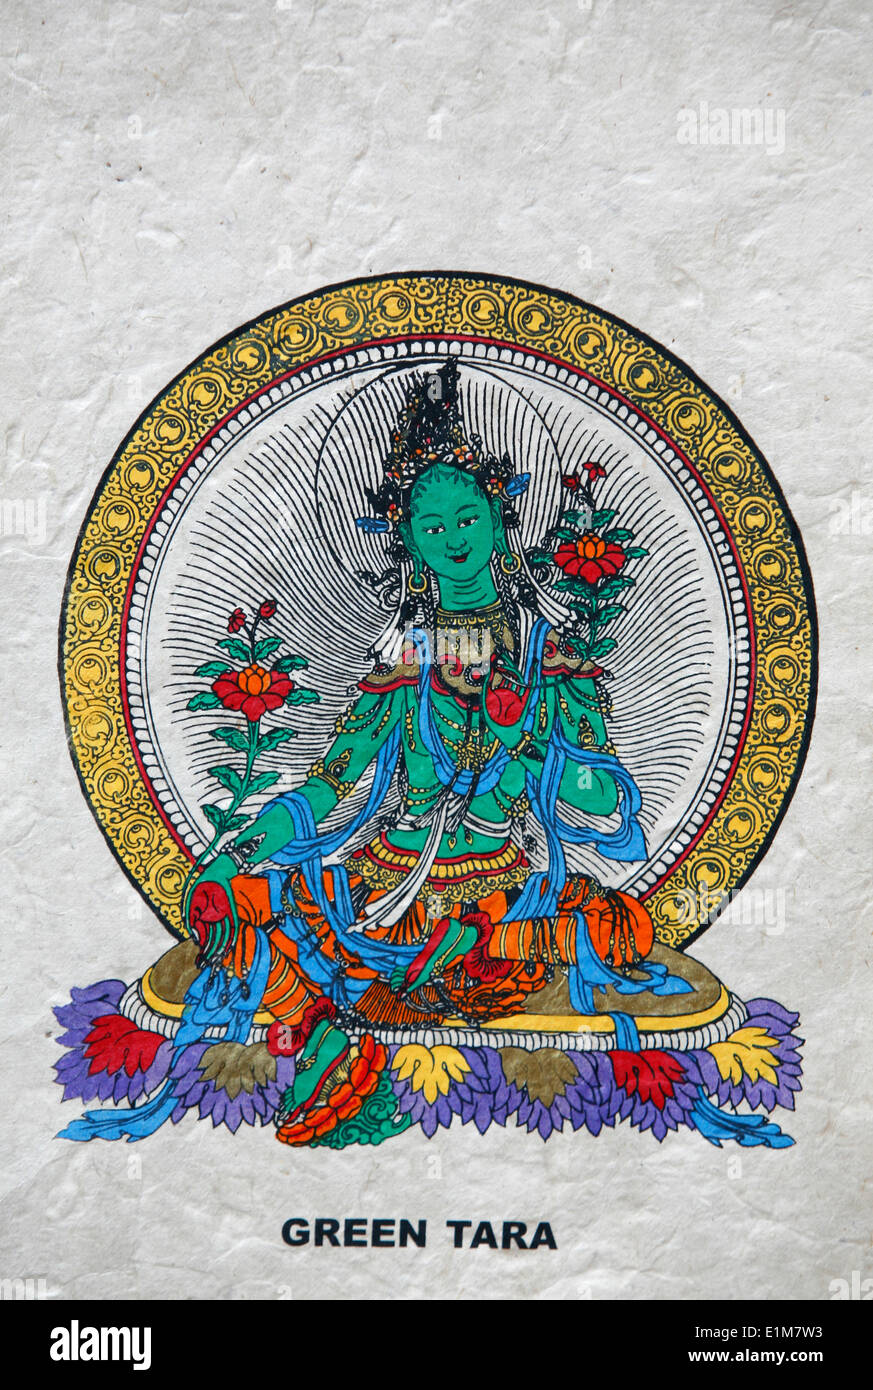 Postkarte Grün Tara Grüner Nepal Tibet Gottheit Buddhistisches 3504 